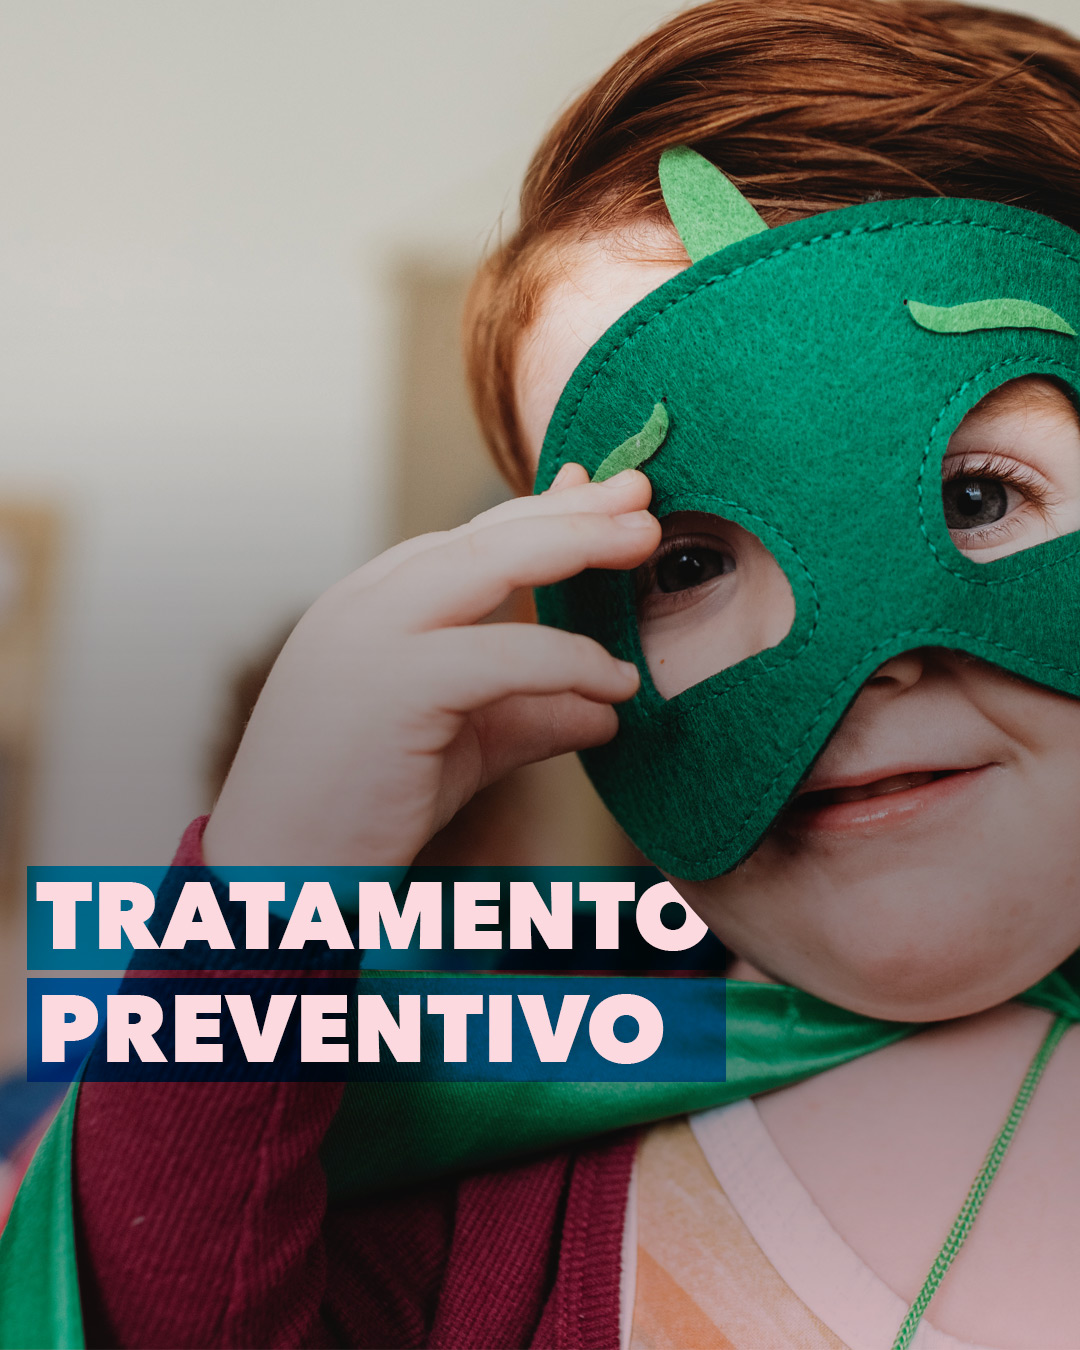 You are currently viewing Tratamento Preventivo para Crianças.